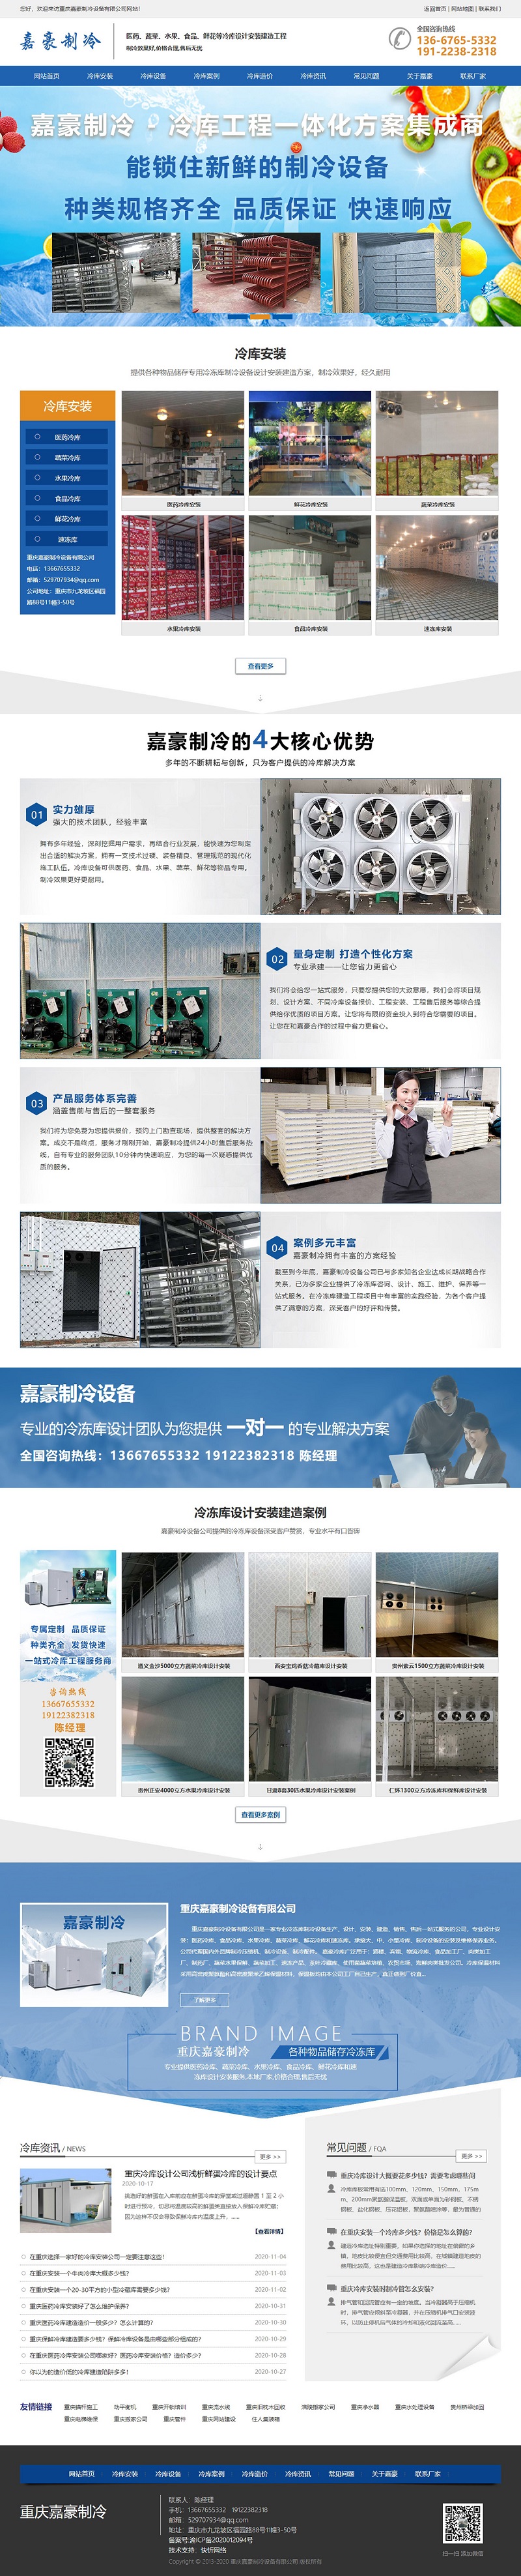 重庆嘉豪制冷设备有限公司网站建设案例